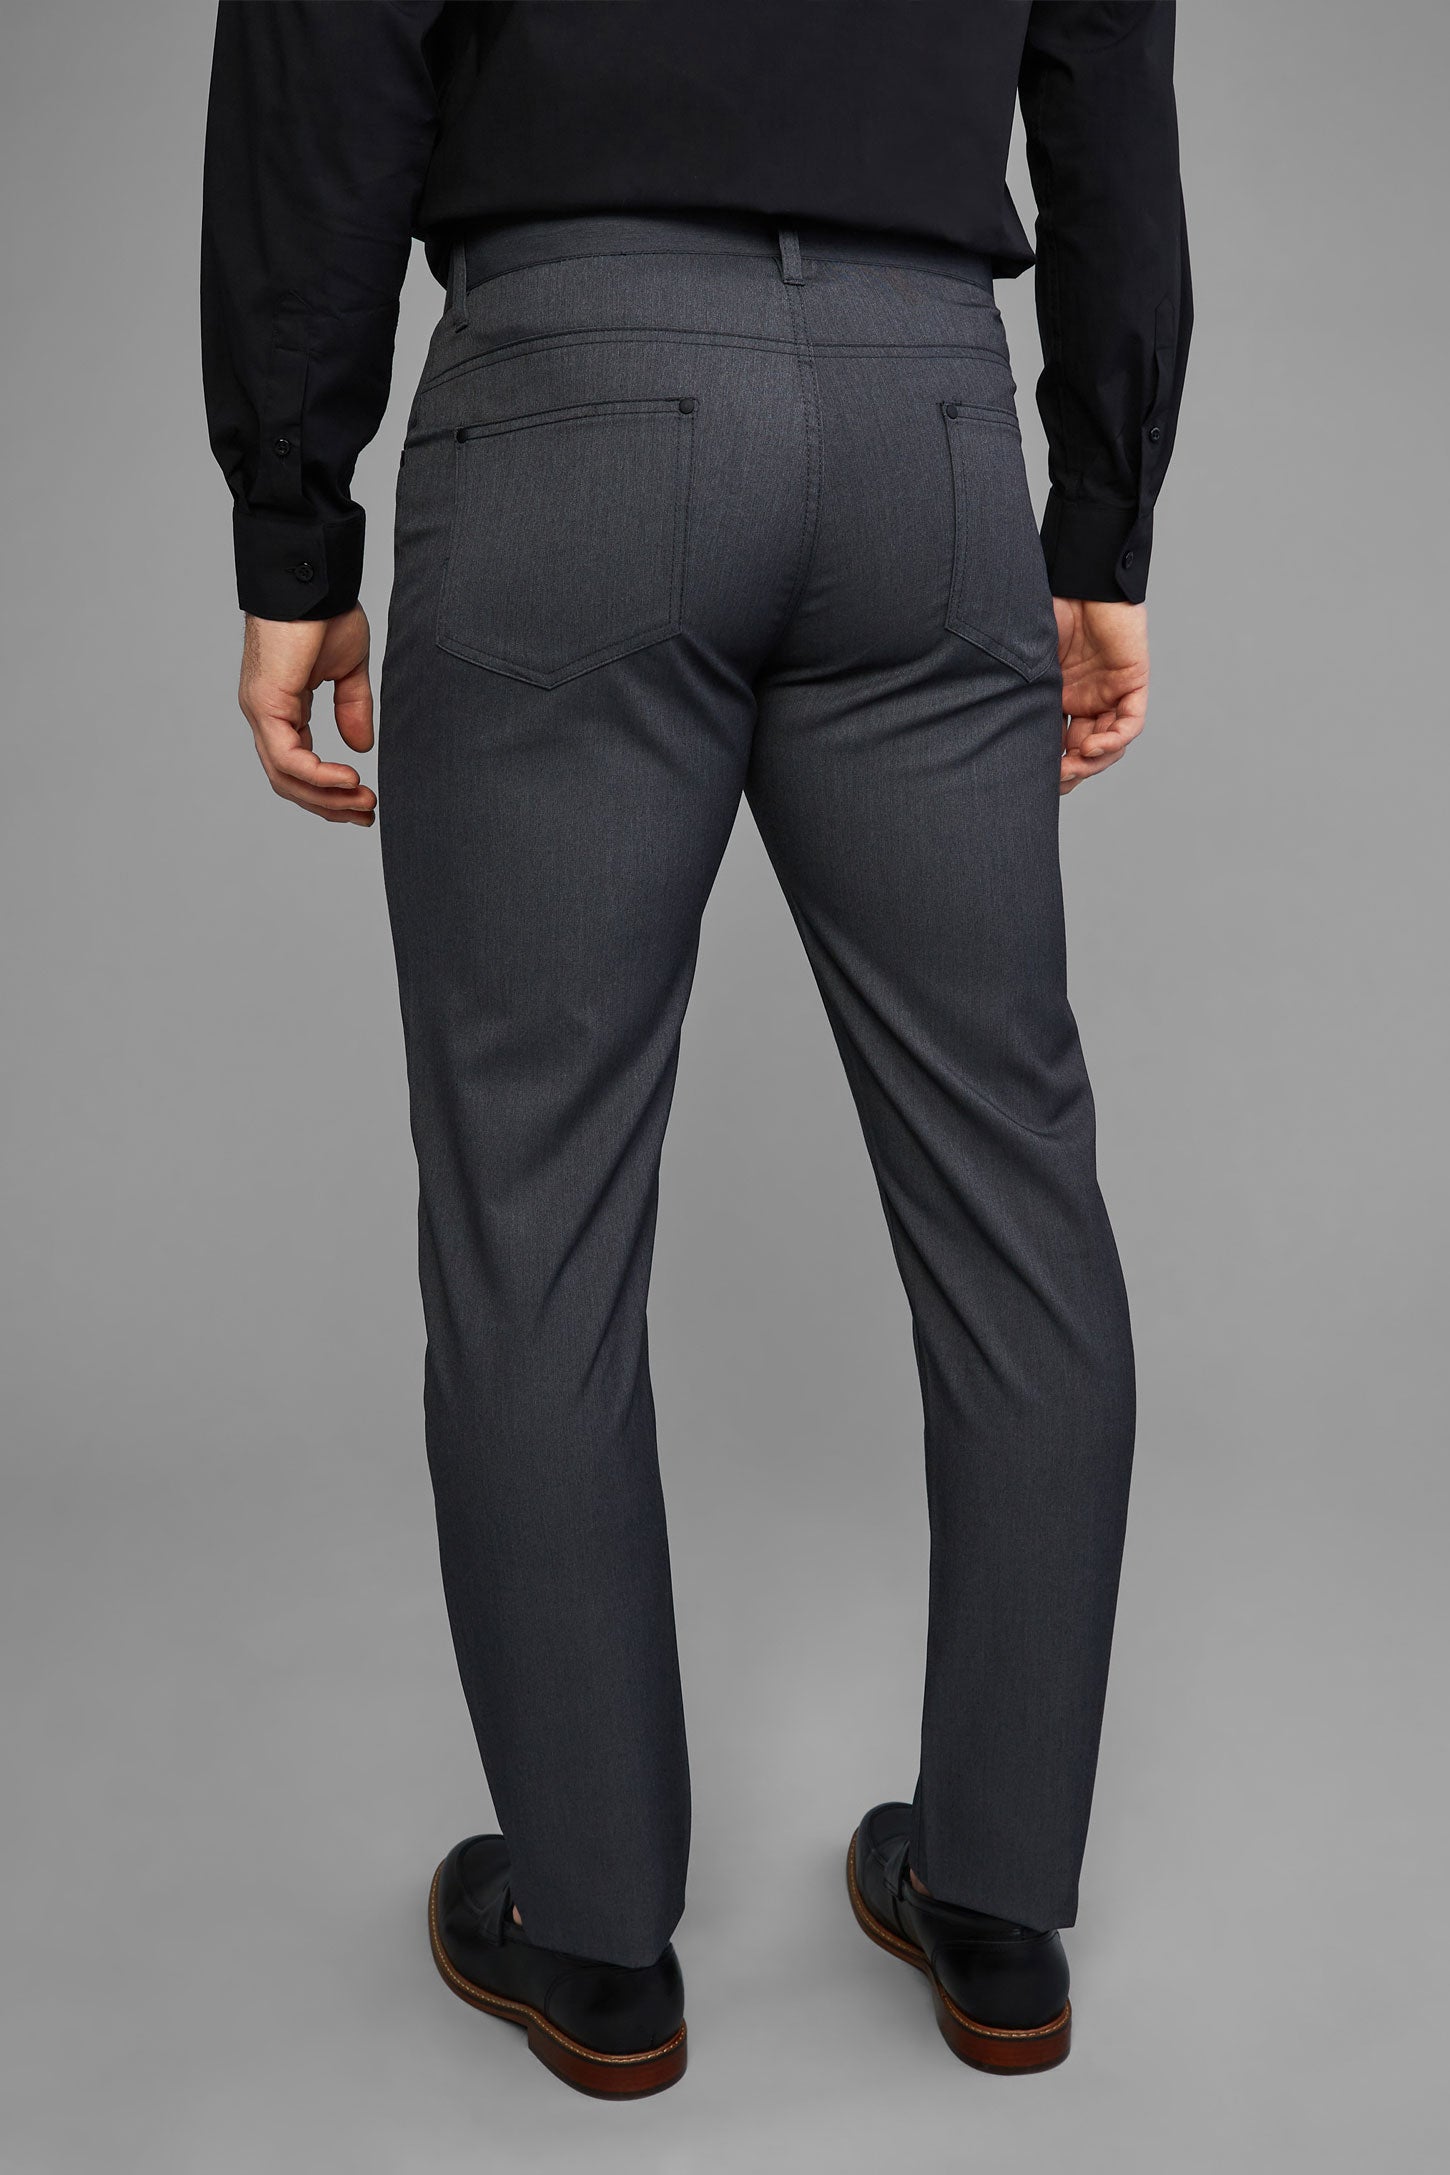 Pantalon habillé 5 poches - Homme && GRIS